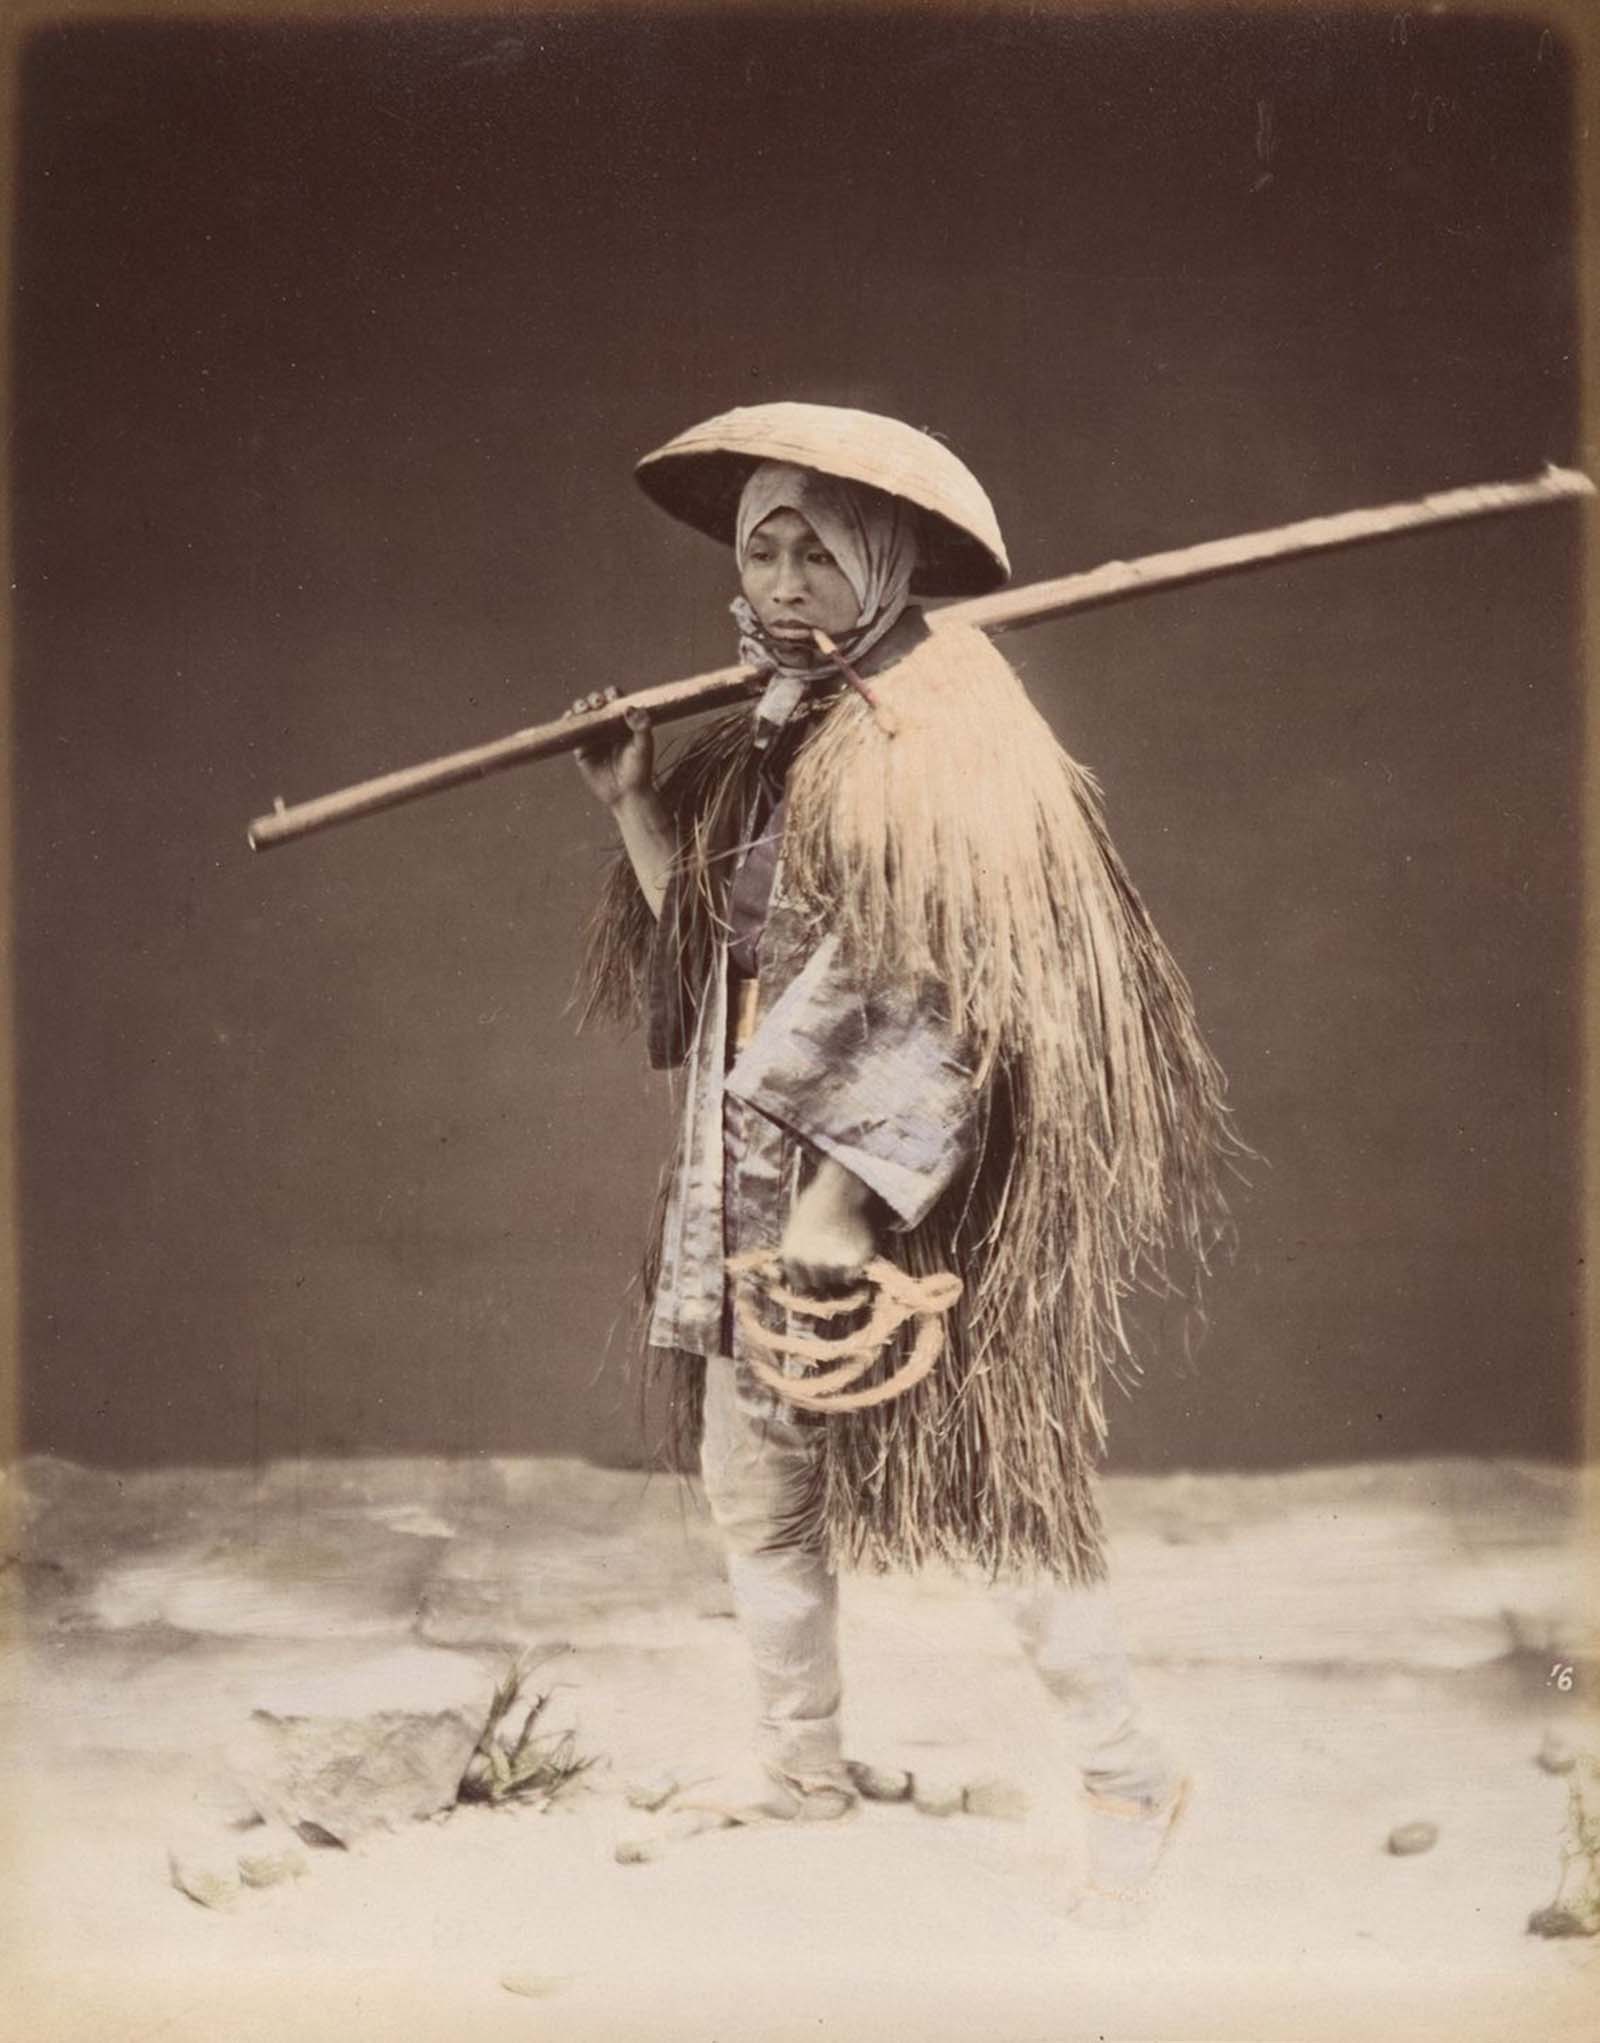 Photographies coloriées à la main du Japon au bord de la modernité, 1870